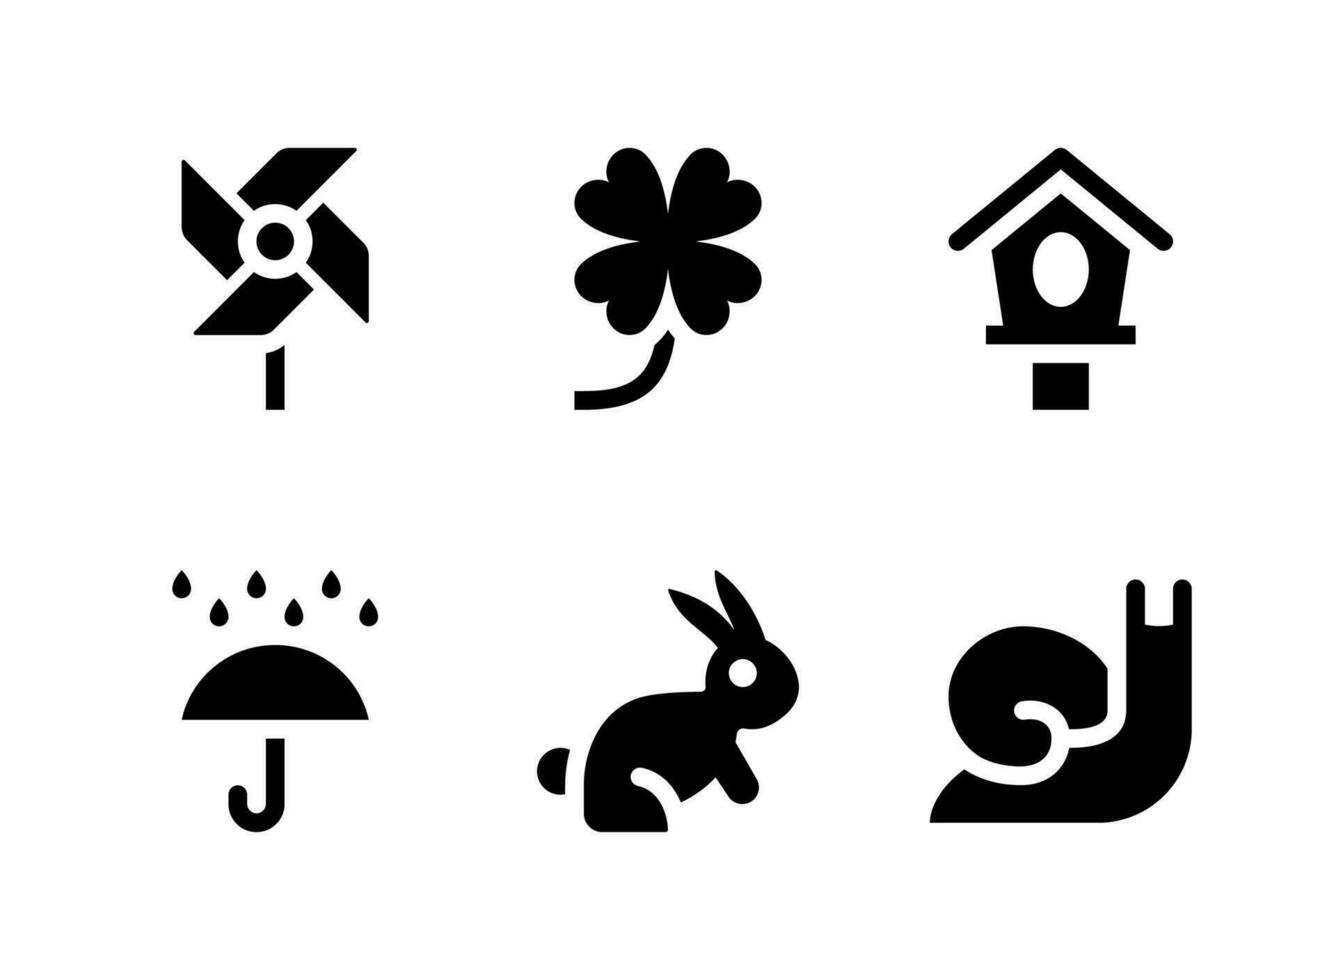 semplice set di icone solide vettoriali relative alla primavera. contiene icone come girandola, trifoglio, casetta per uccelli, pioggia e altro ancora.